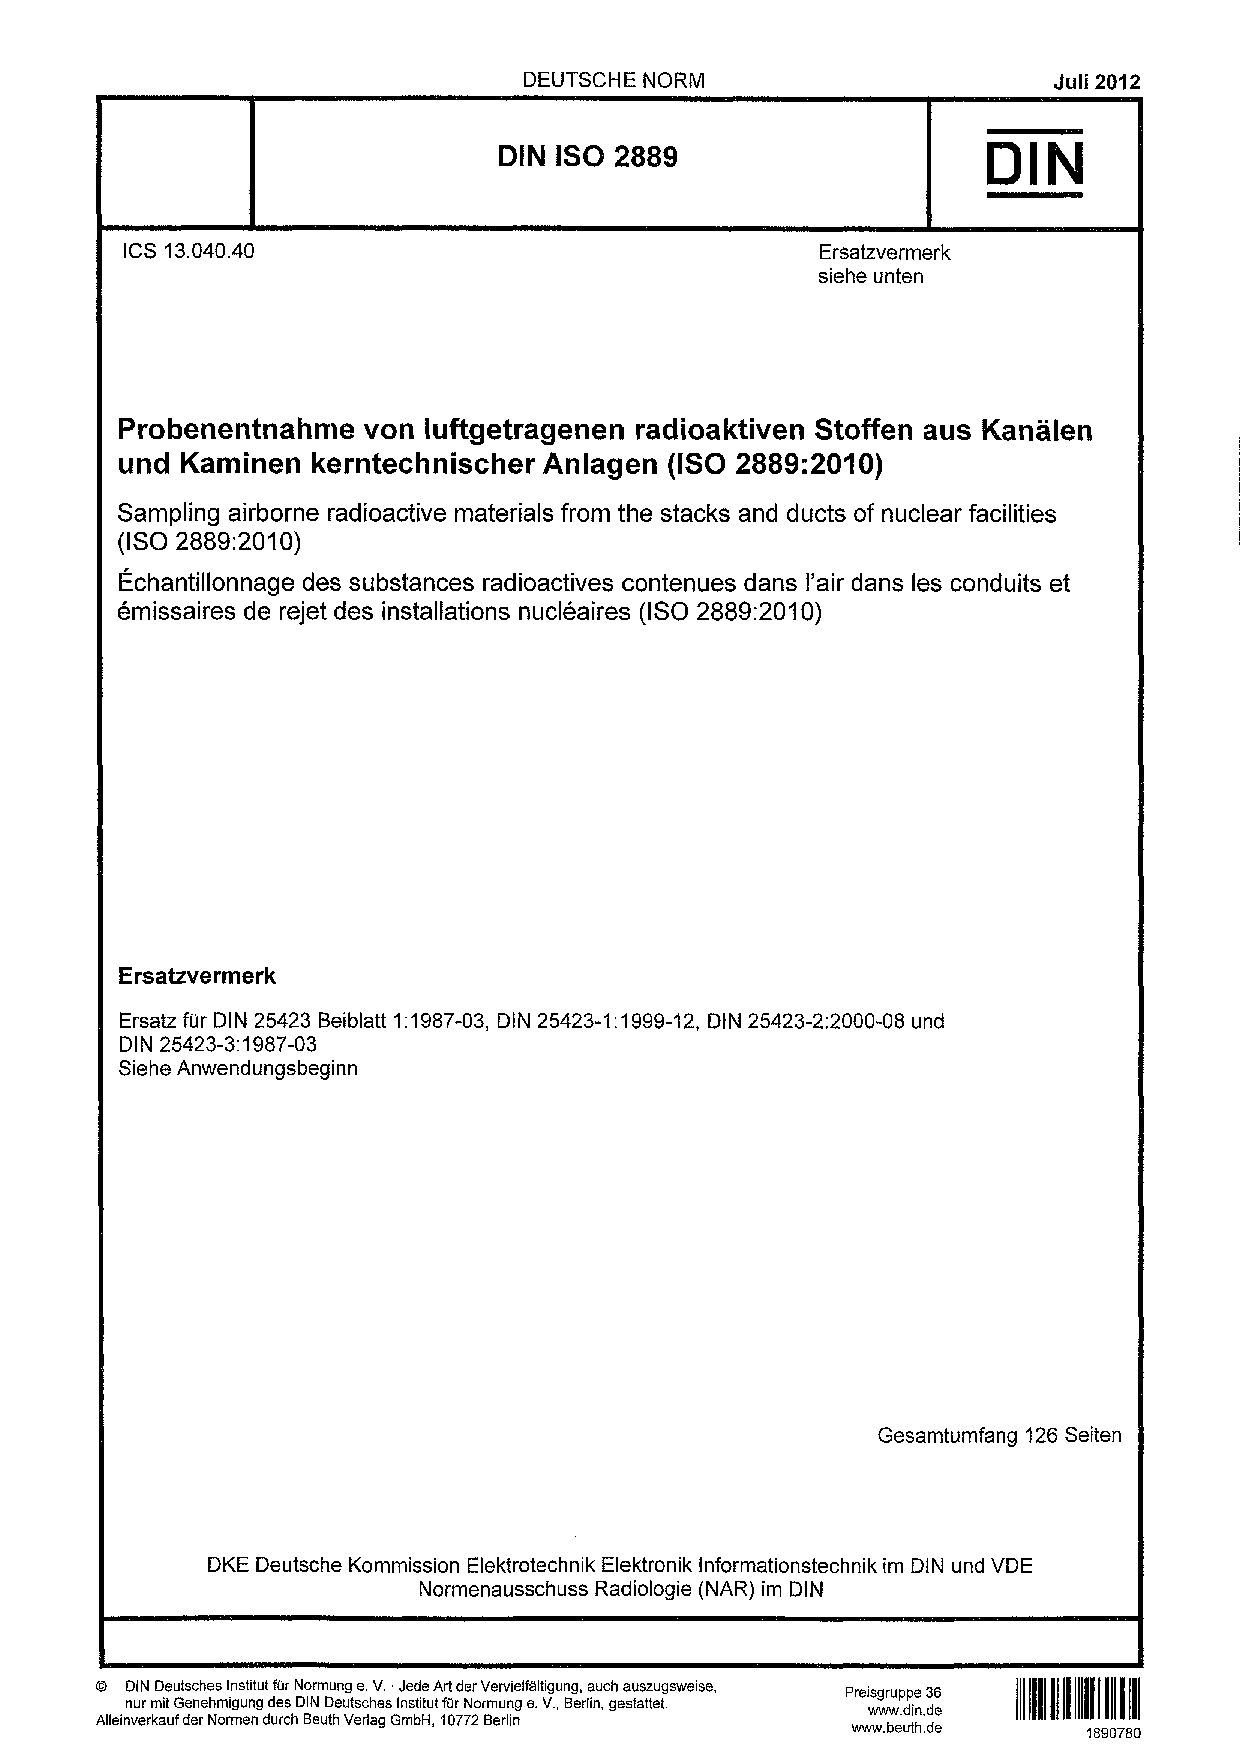 DIN ISO 2889:2012封面图